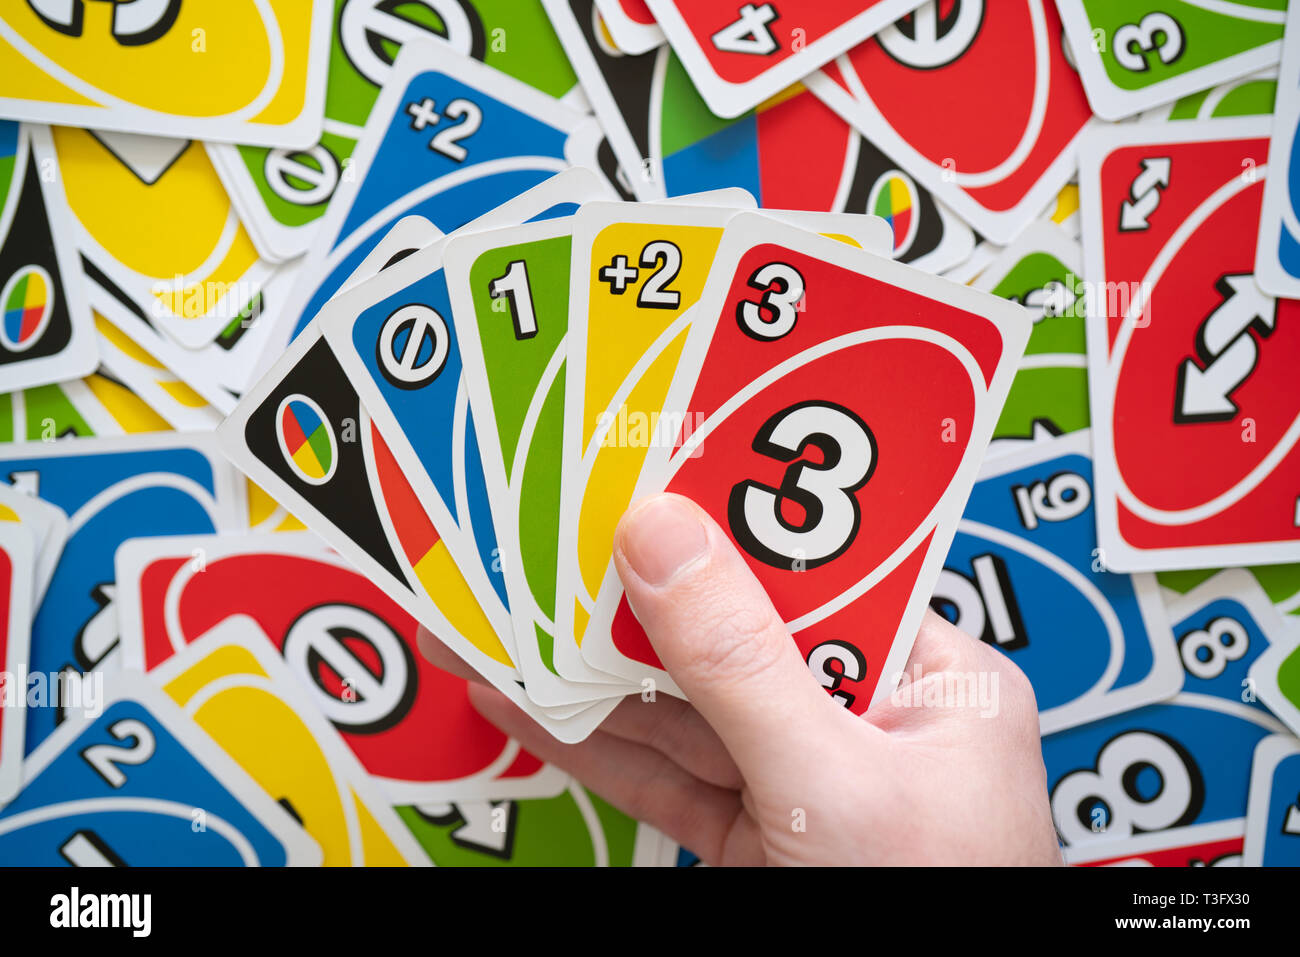 Khám phá trò chơi thú vị với bộ bài Uno! Chơi cùng bạn bè và gia đình với những lá bài đầy sáng tạo và thách đố. Tại sao không bắt đầu sự thử thách này ngay bây giờ, với bộ bài Uno vô cùng thú vị?